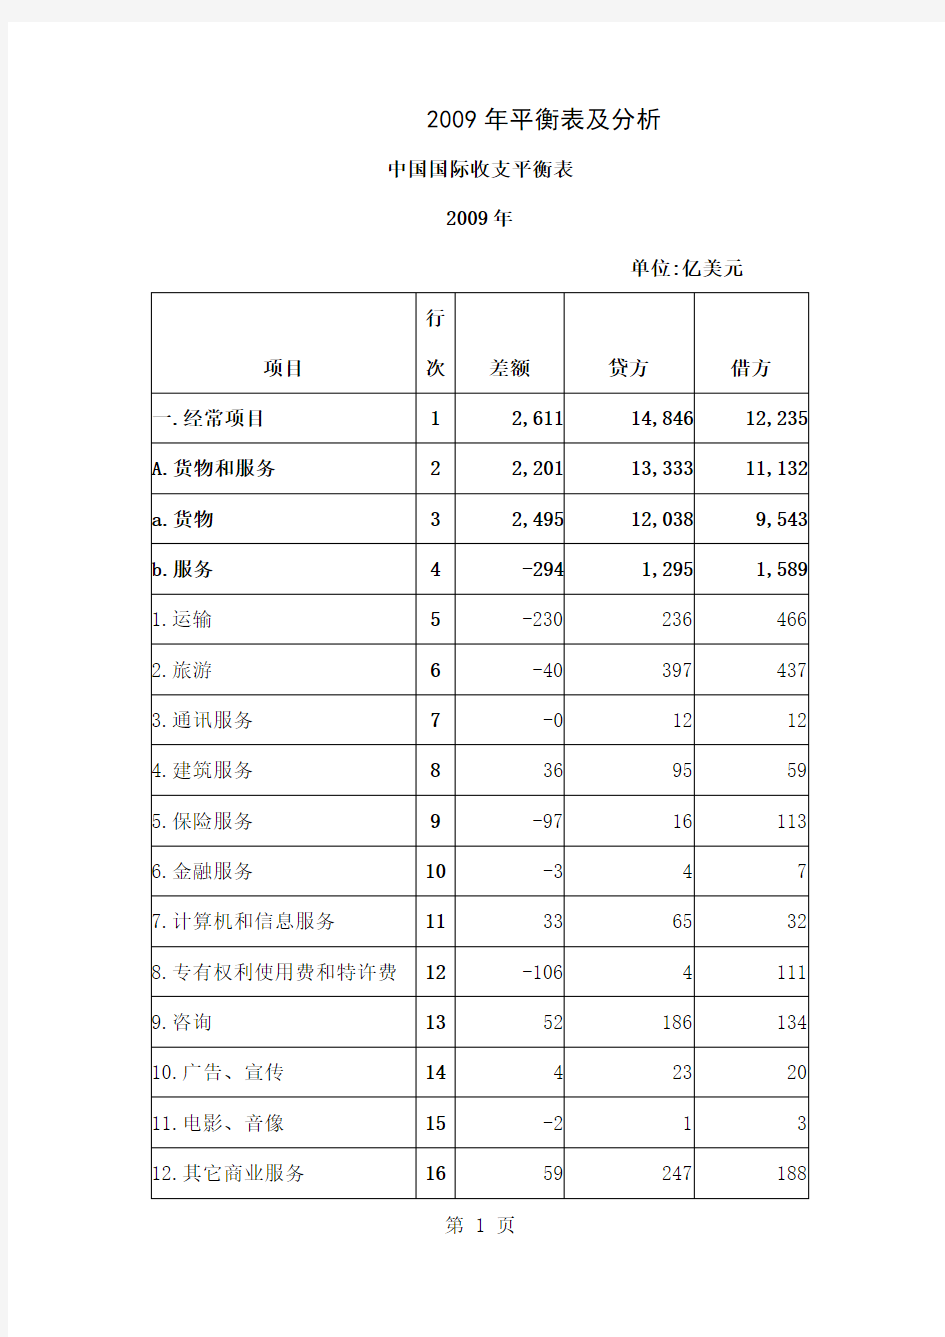 2019--2019年中国国际收支平衡表及分析共25页